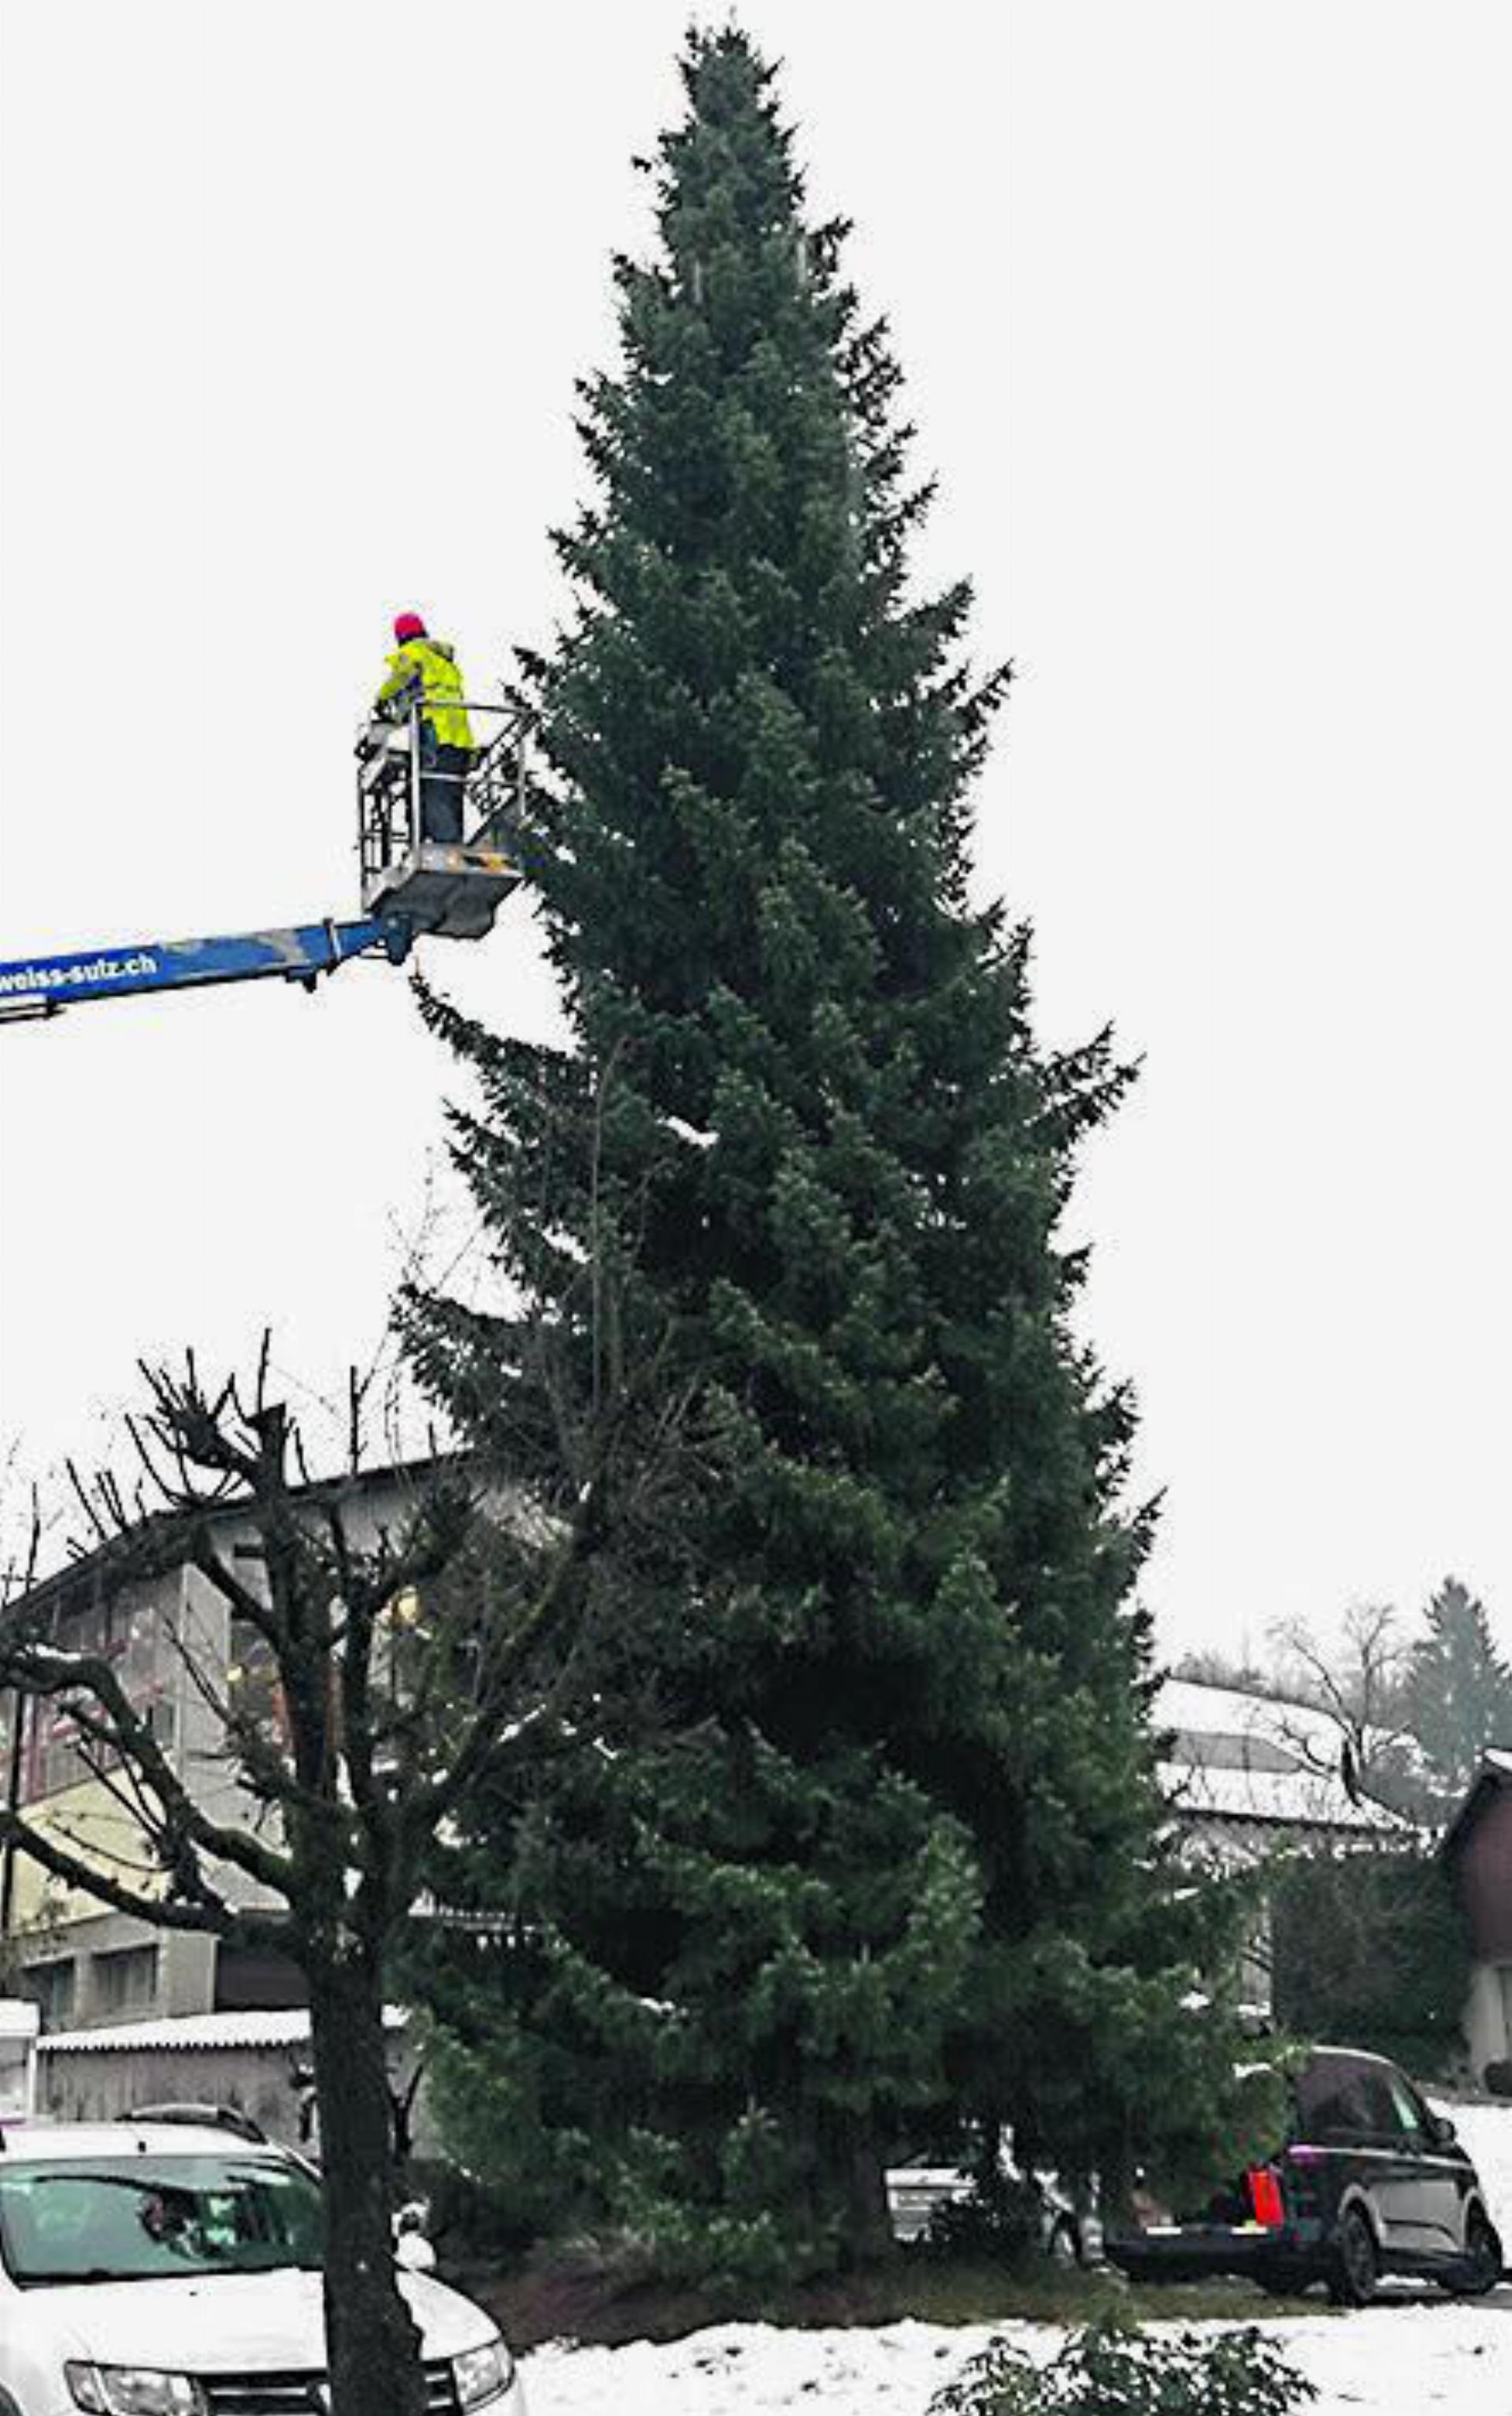 In Fronarbeit wird der Baum vom Gewerbe Regio Laufenburg geschmückt. Foto: Ludwig Dünner